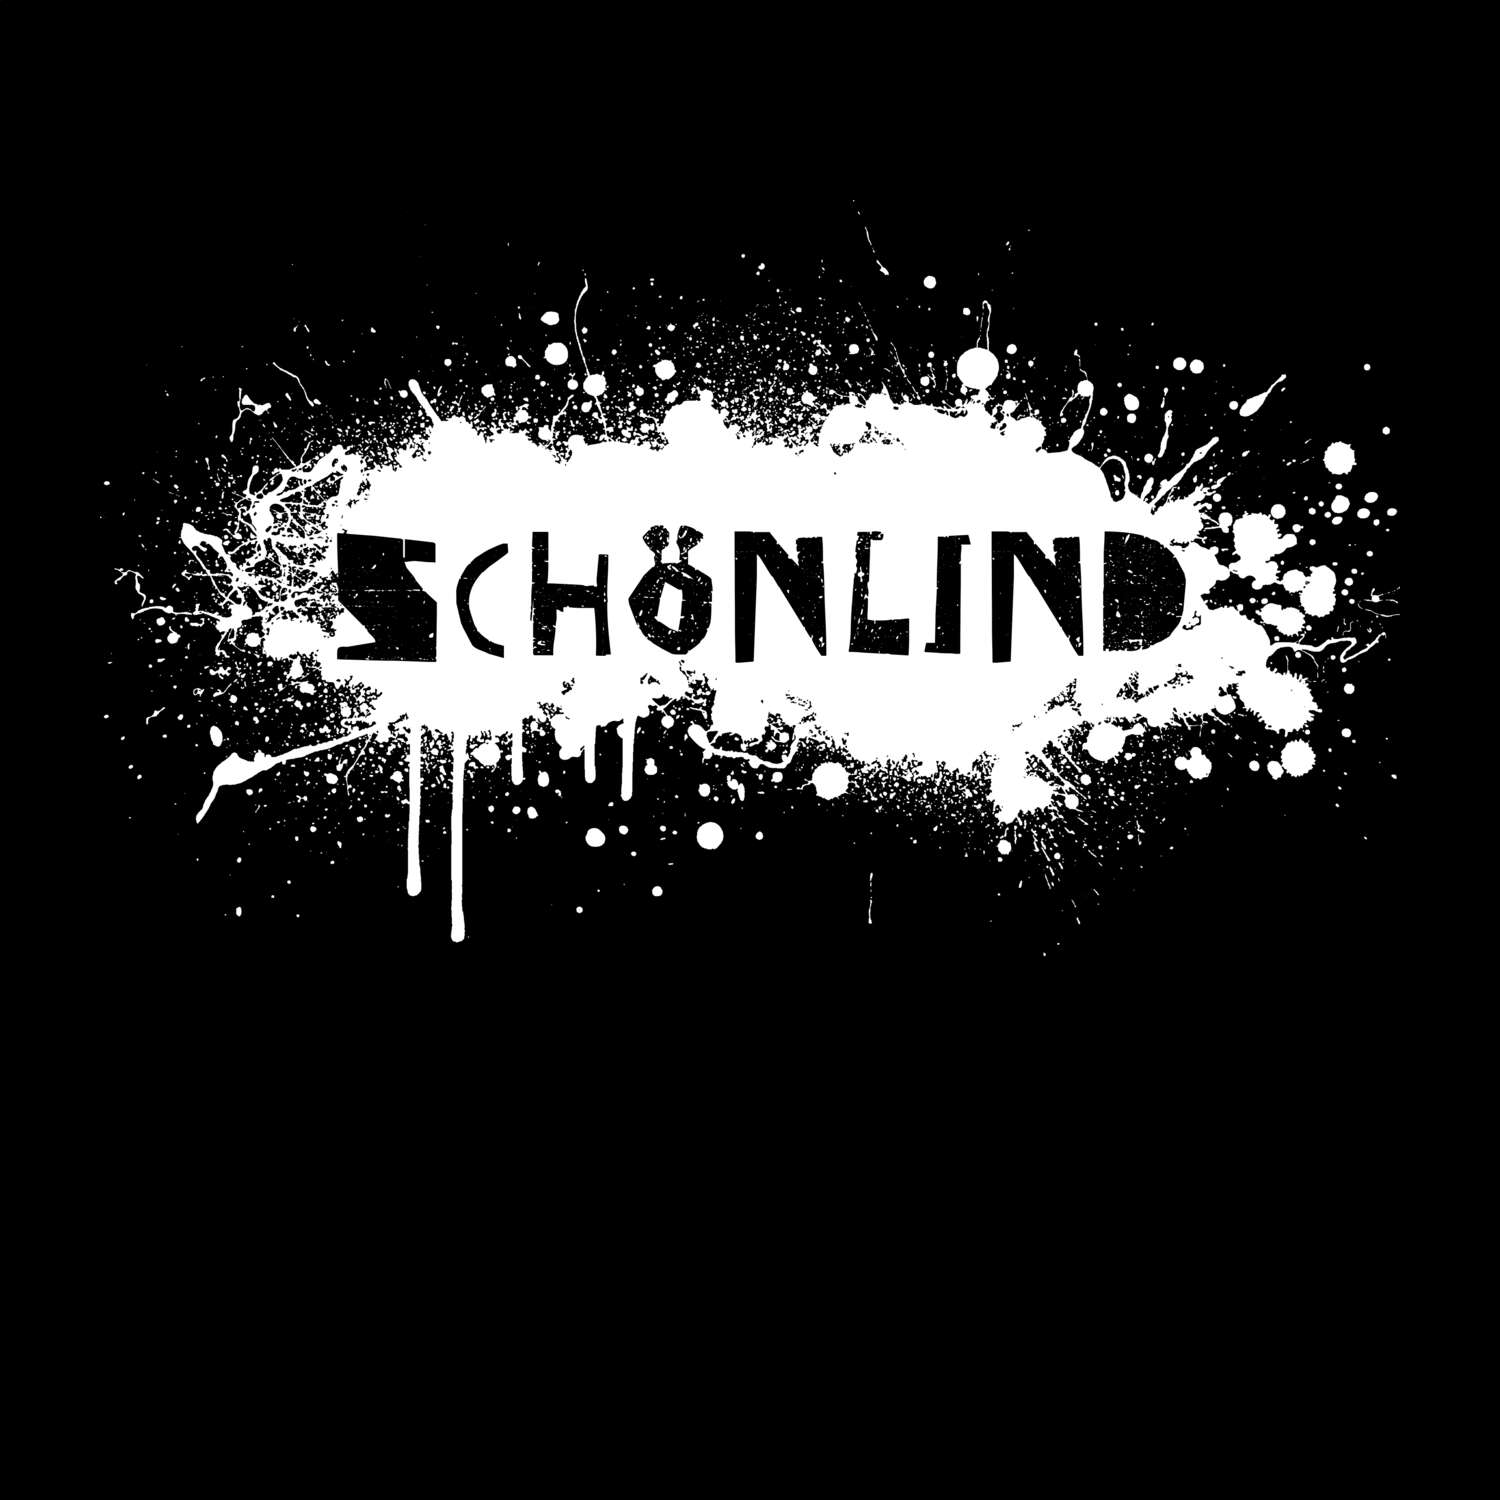 Schönlind T-Shirt »Paint Splash Punk«